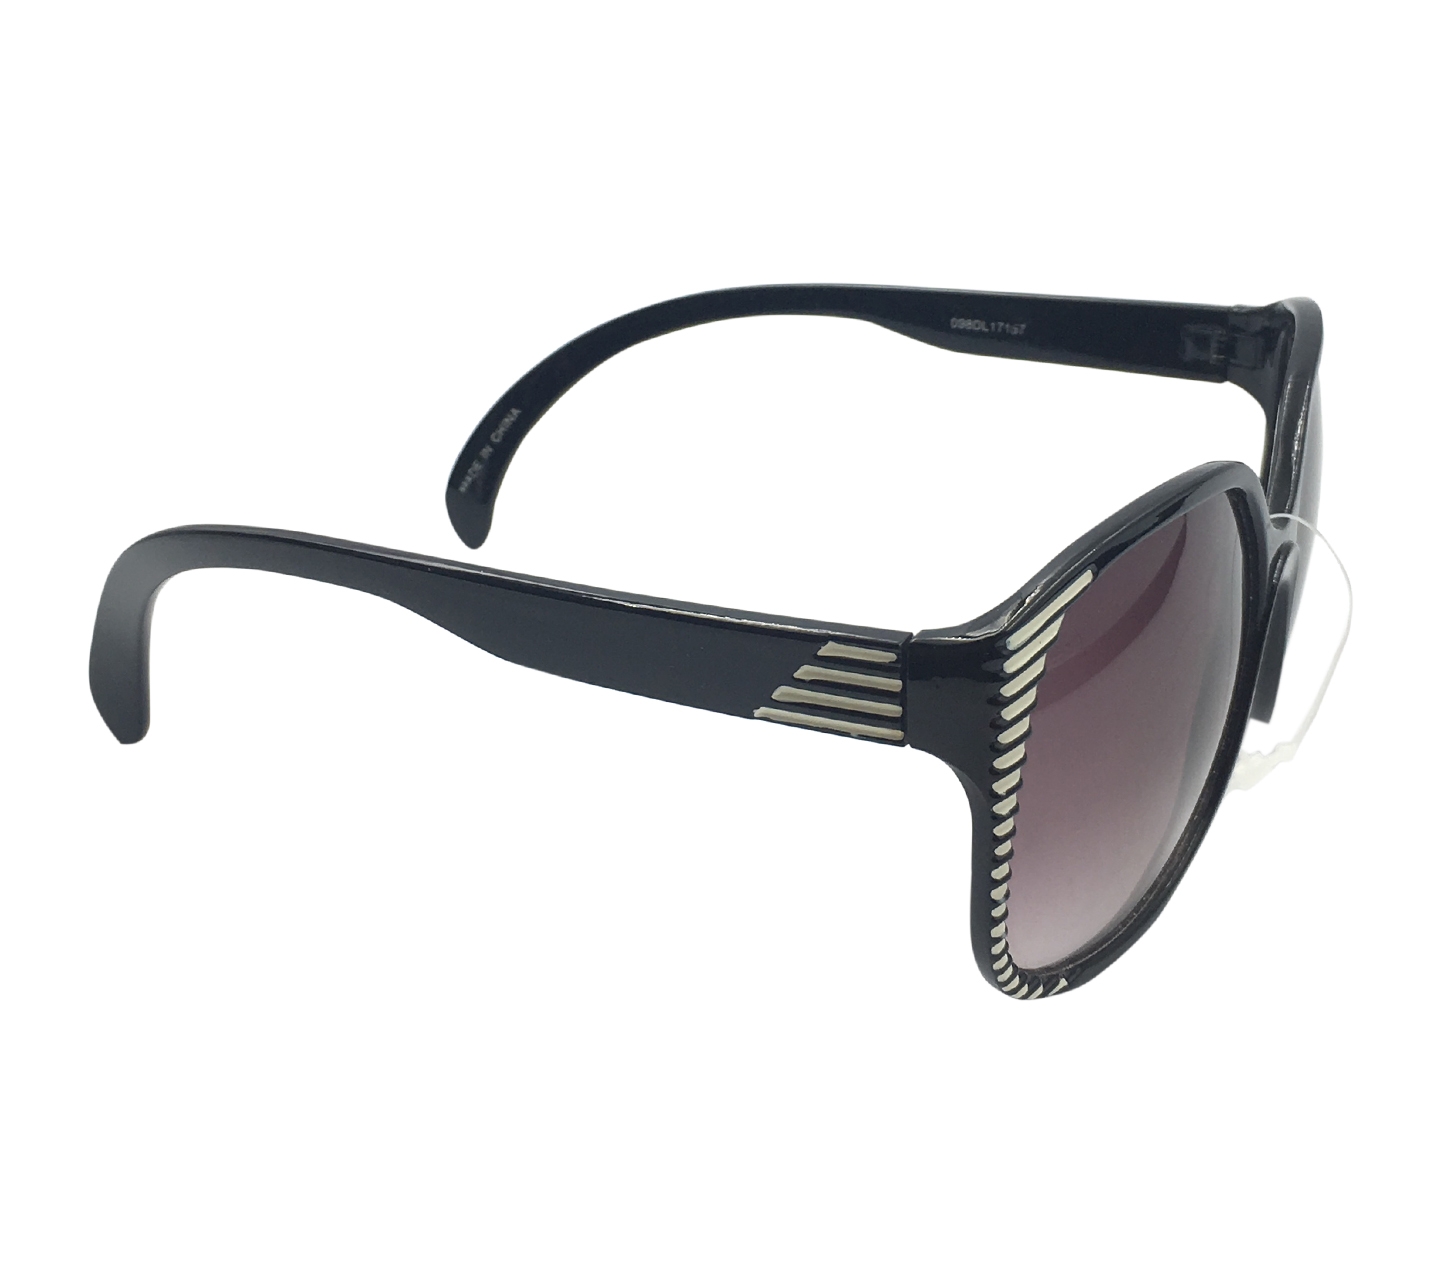 Forever21 Black Sunglasses